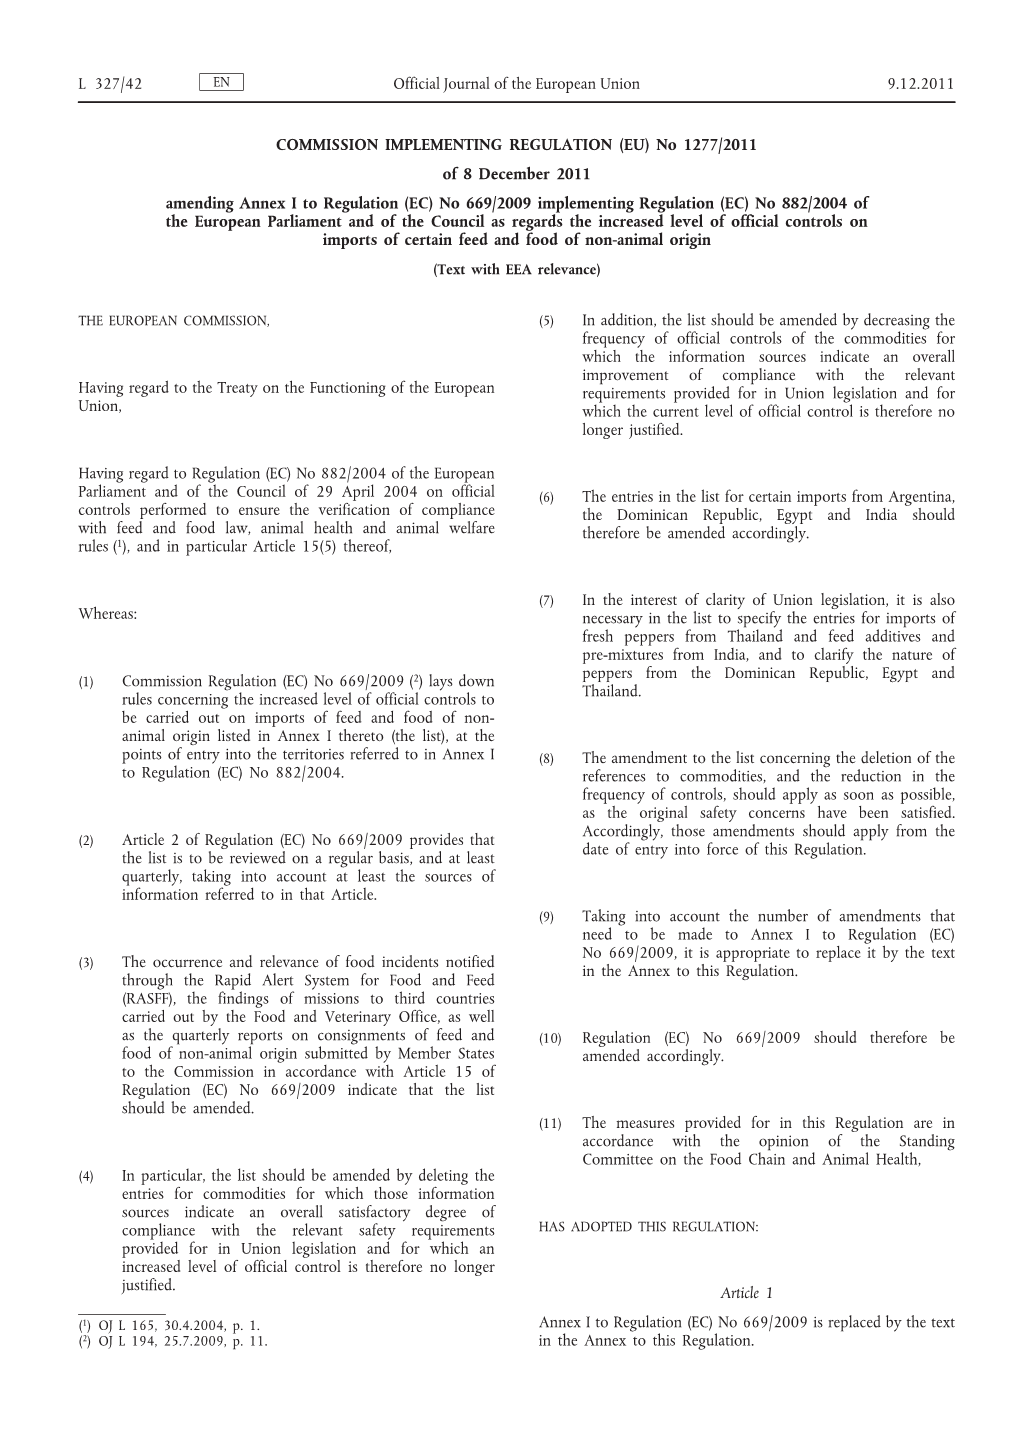 (EU) No 1277/2011 of 8 December 2011 Amending Annex I to Regulation